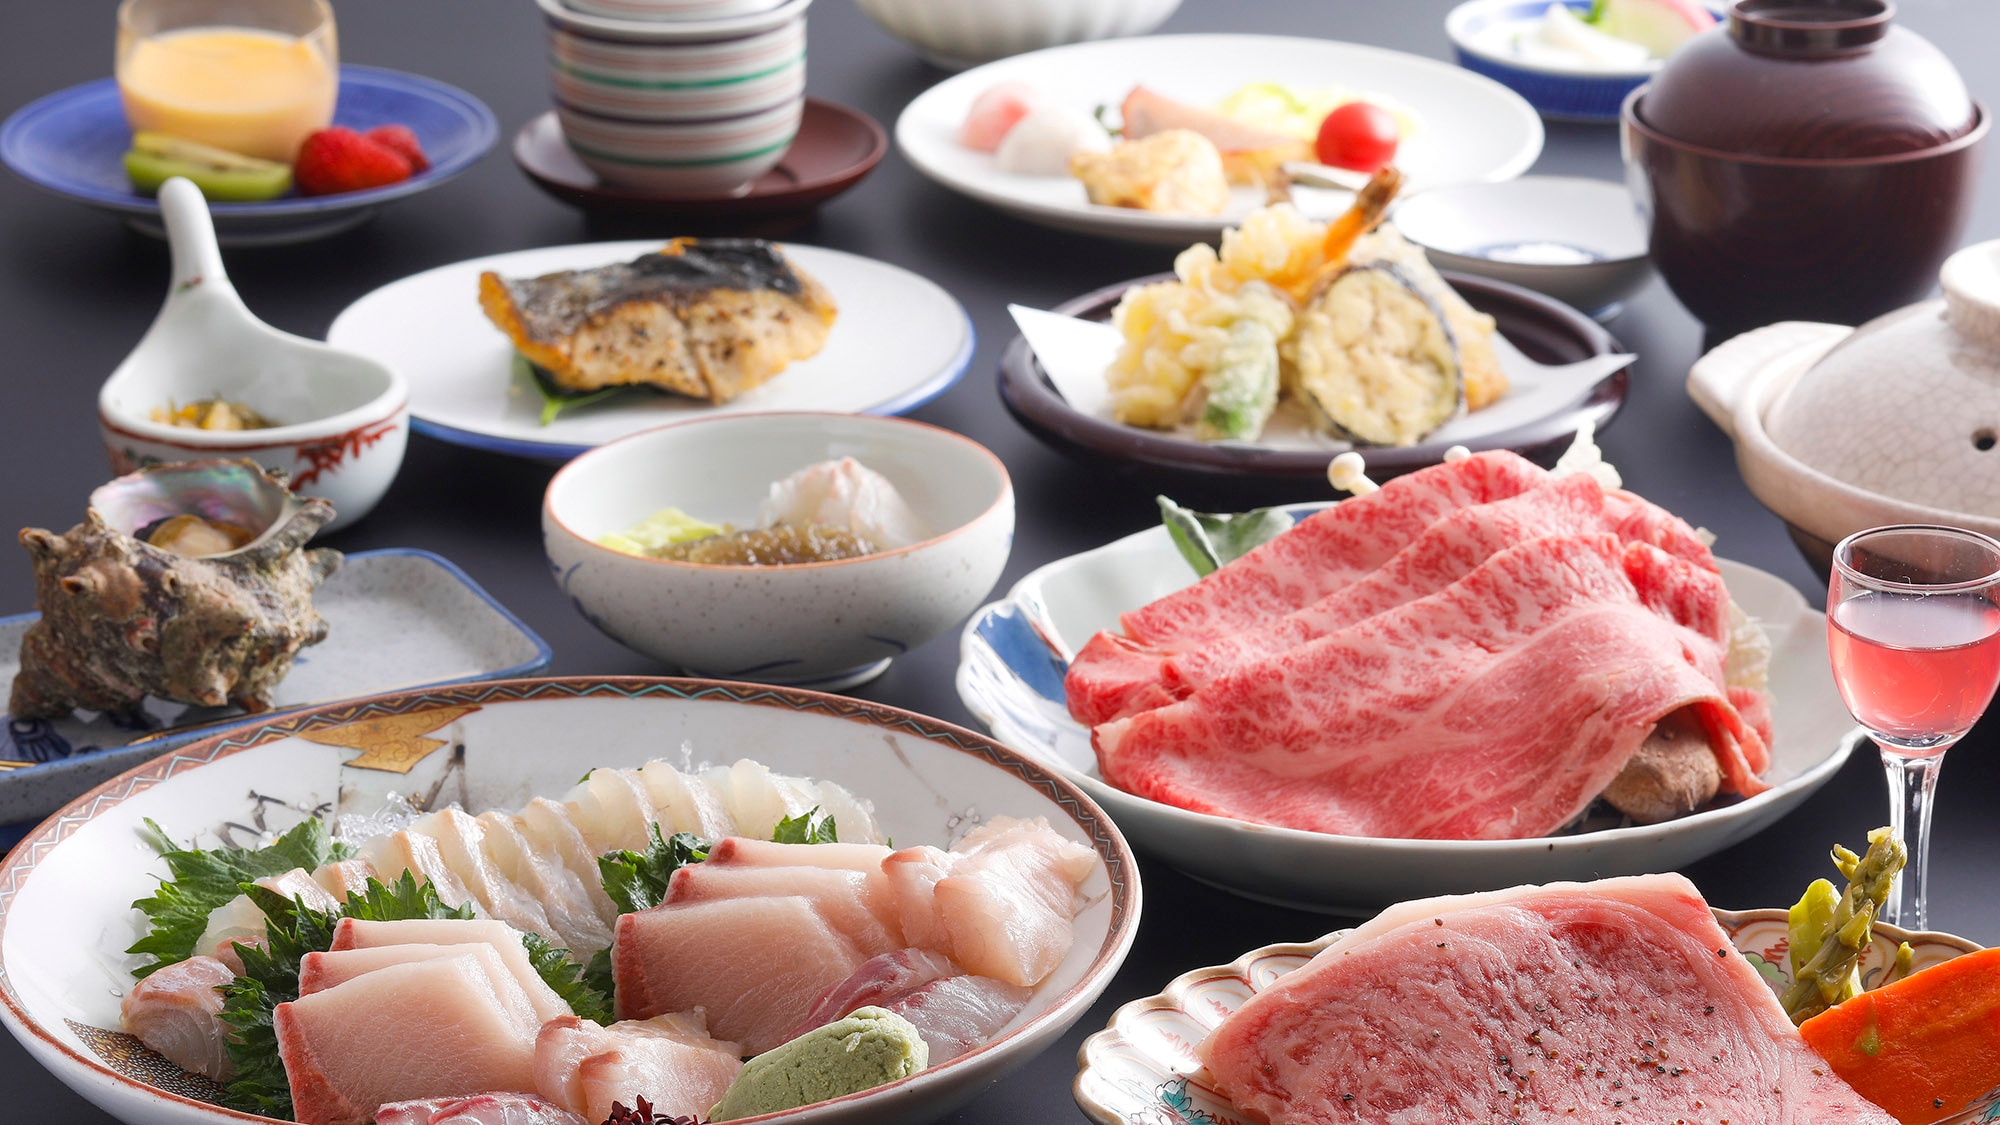 ・【단바우시 회석 저녁 식사 일례(이미지)】신선한 일본해의 바다의 행운을 듬뿍 사용한 회석 요리